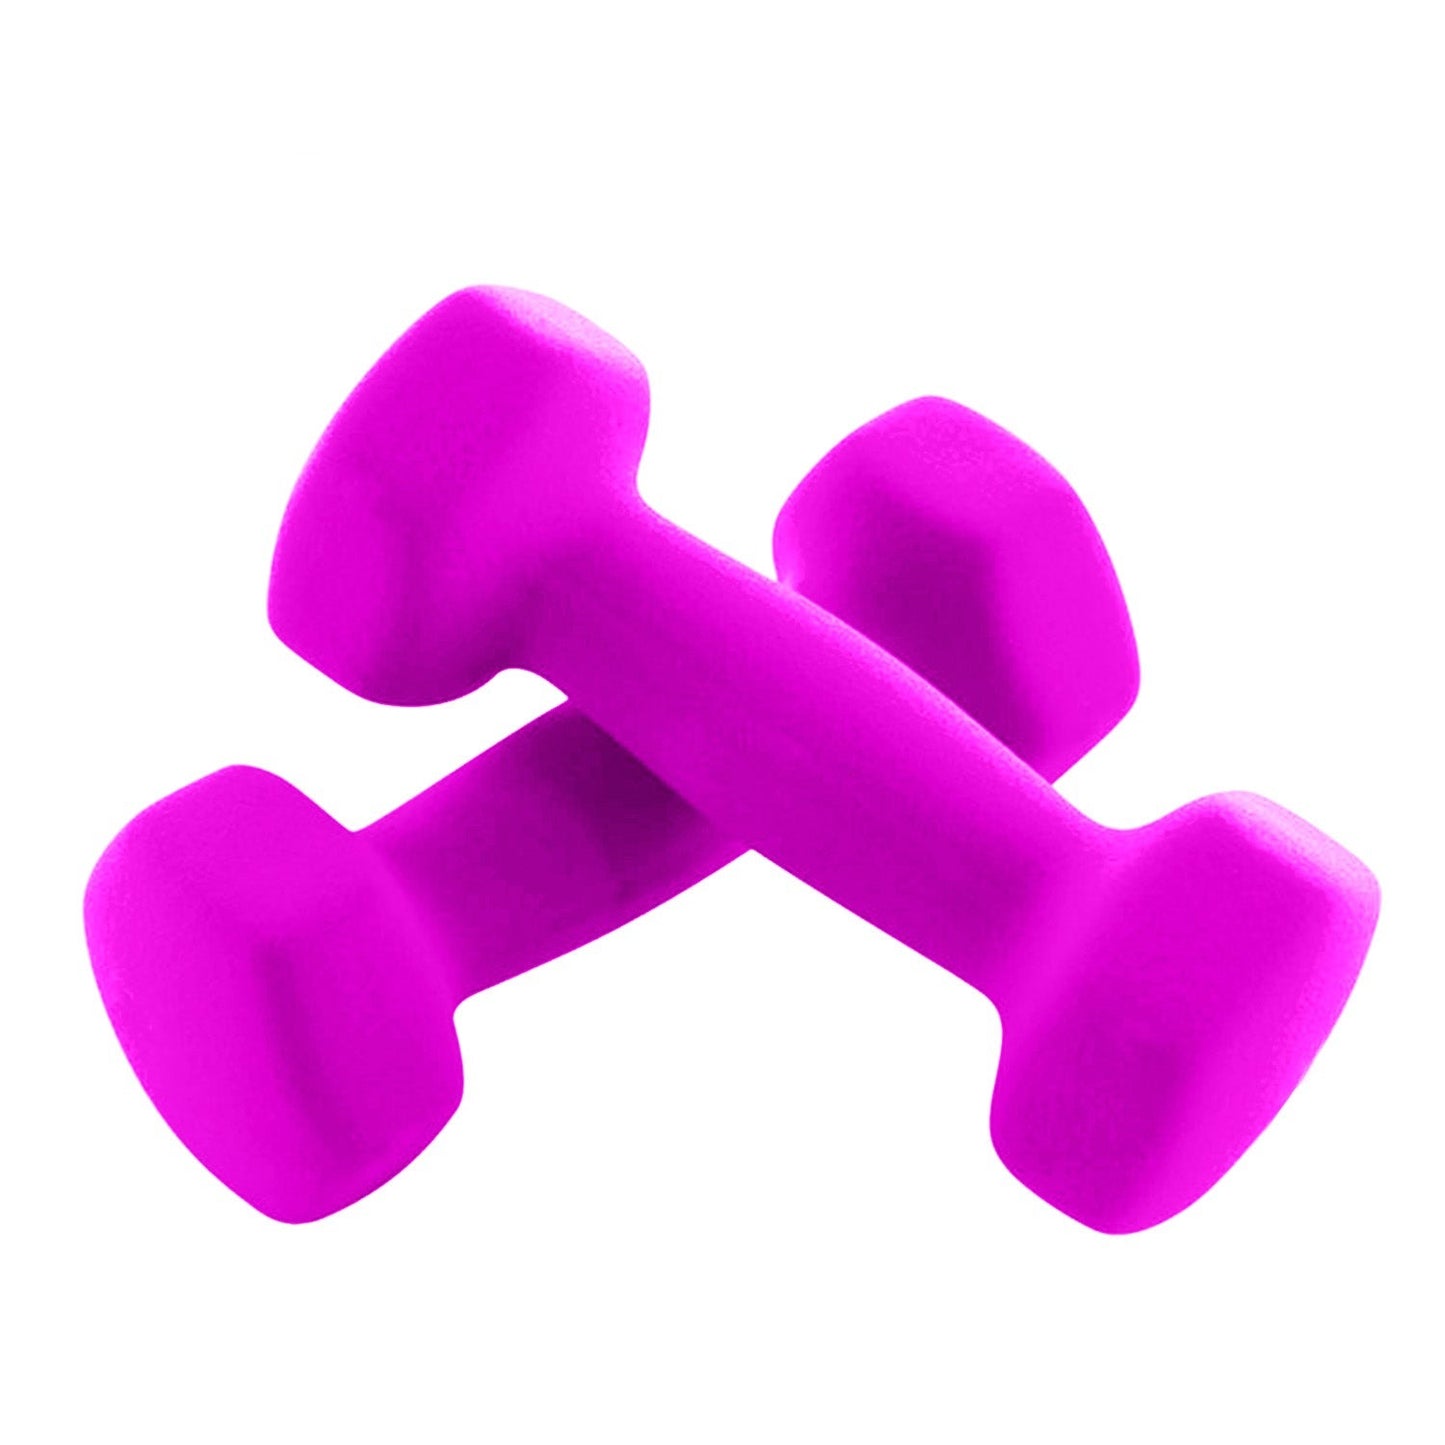 Neoprene Hex Dumbbells 2KG x 2 - Pink